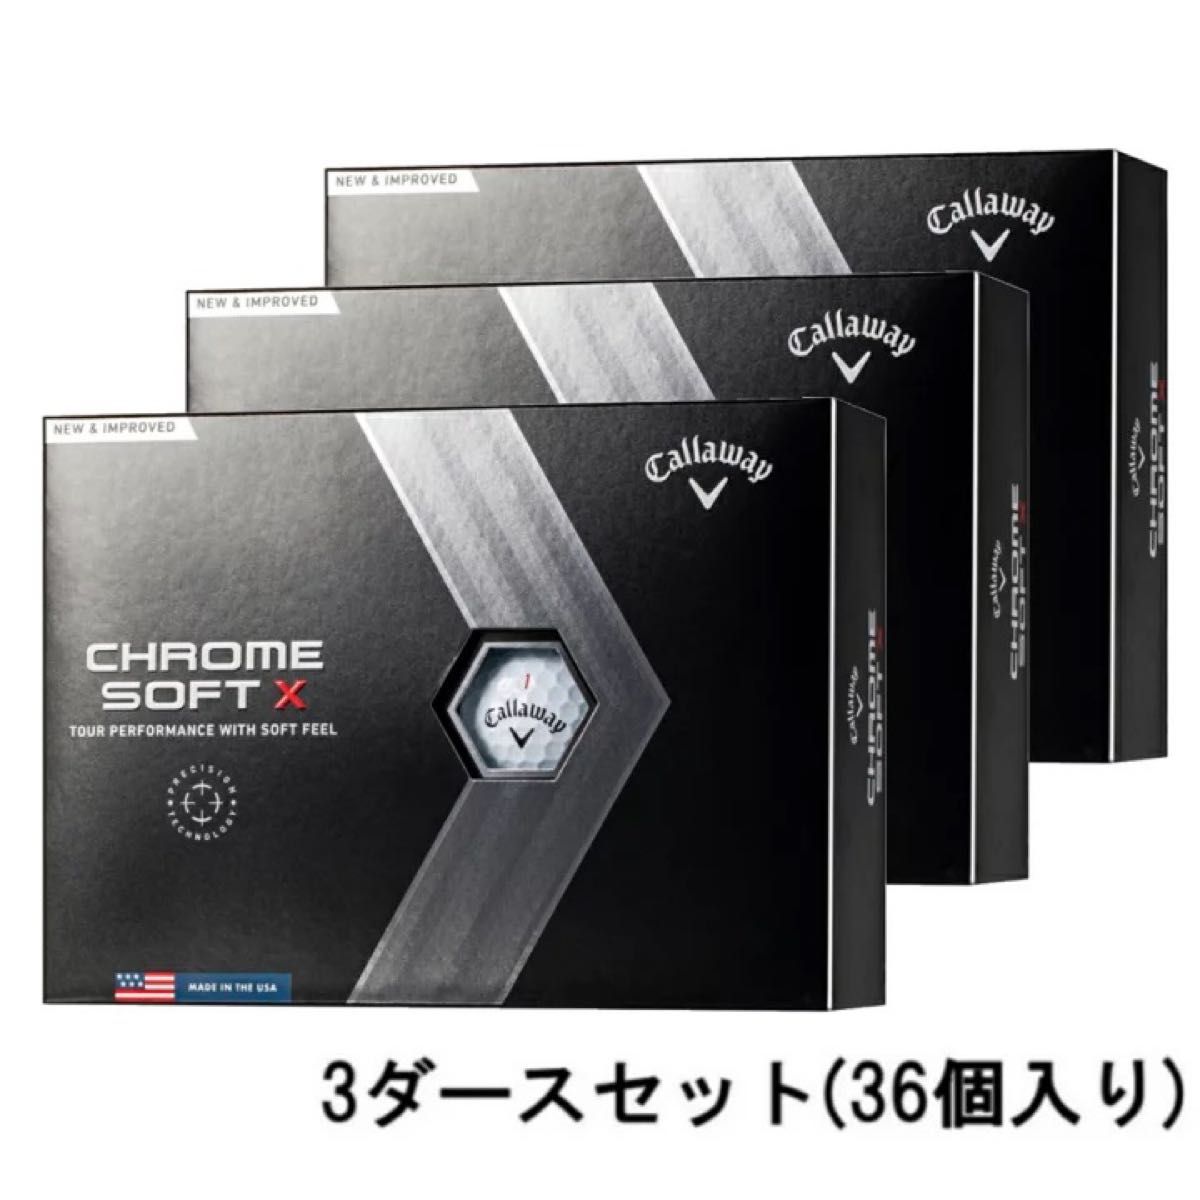 ◆新品◆キャロウェイ CHROME SOFT X 3ダース(36球入) ホワイト